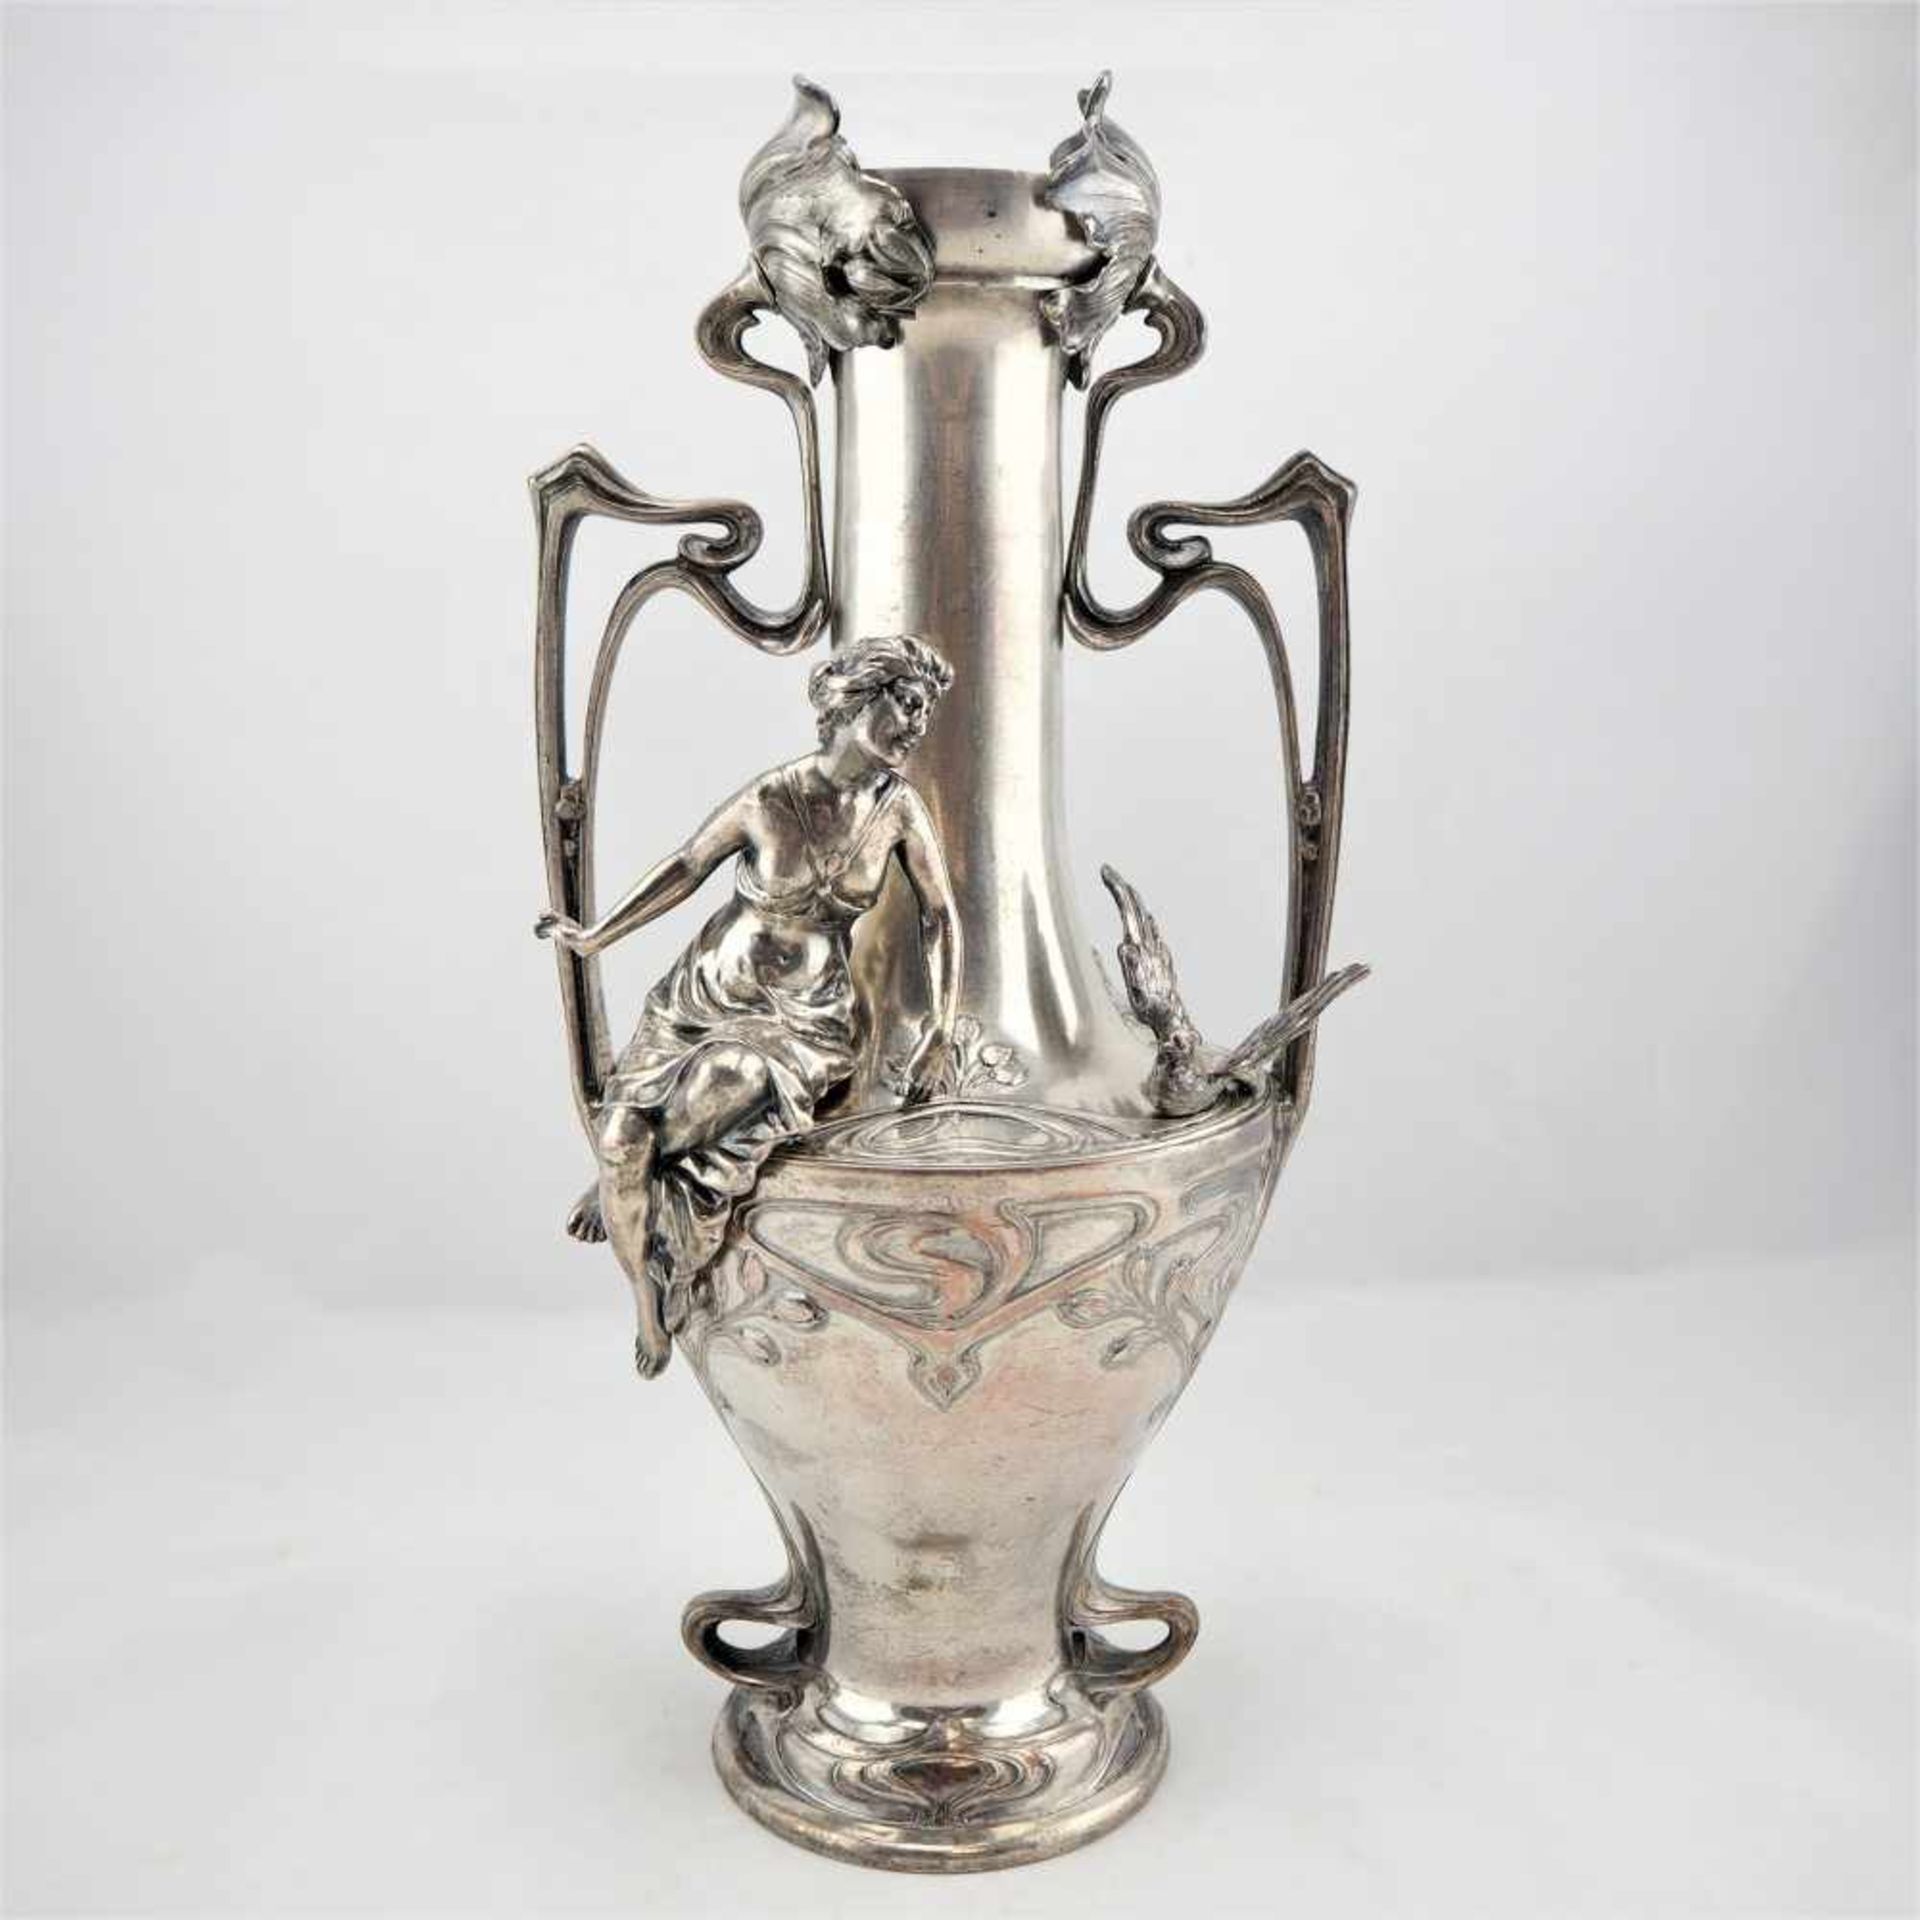 Große Jugendstil Vase, wohl Wien um 1900Außergewöhnlich aufwendig verarbeitete Jugendstil Vase aus